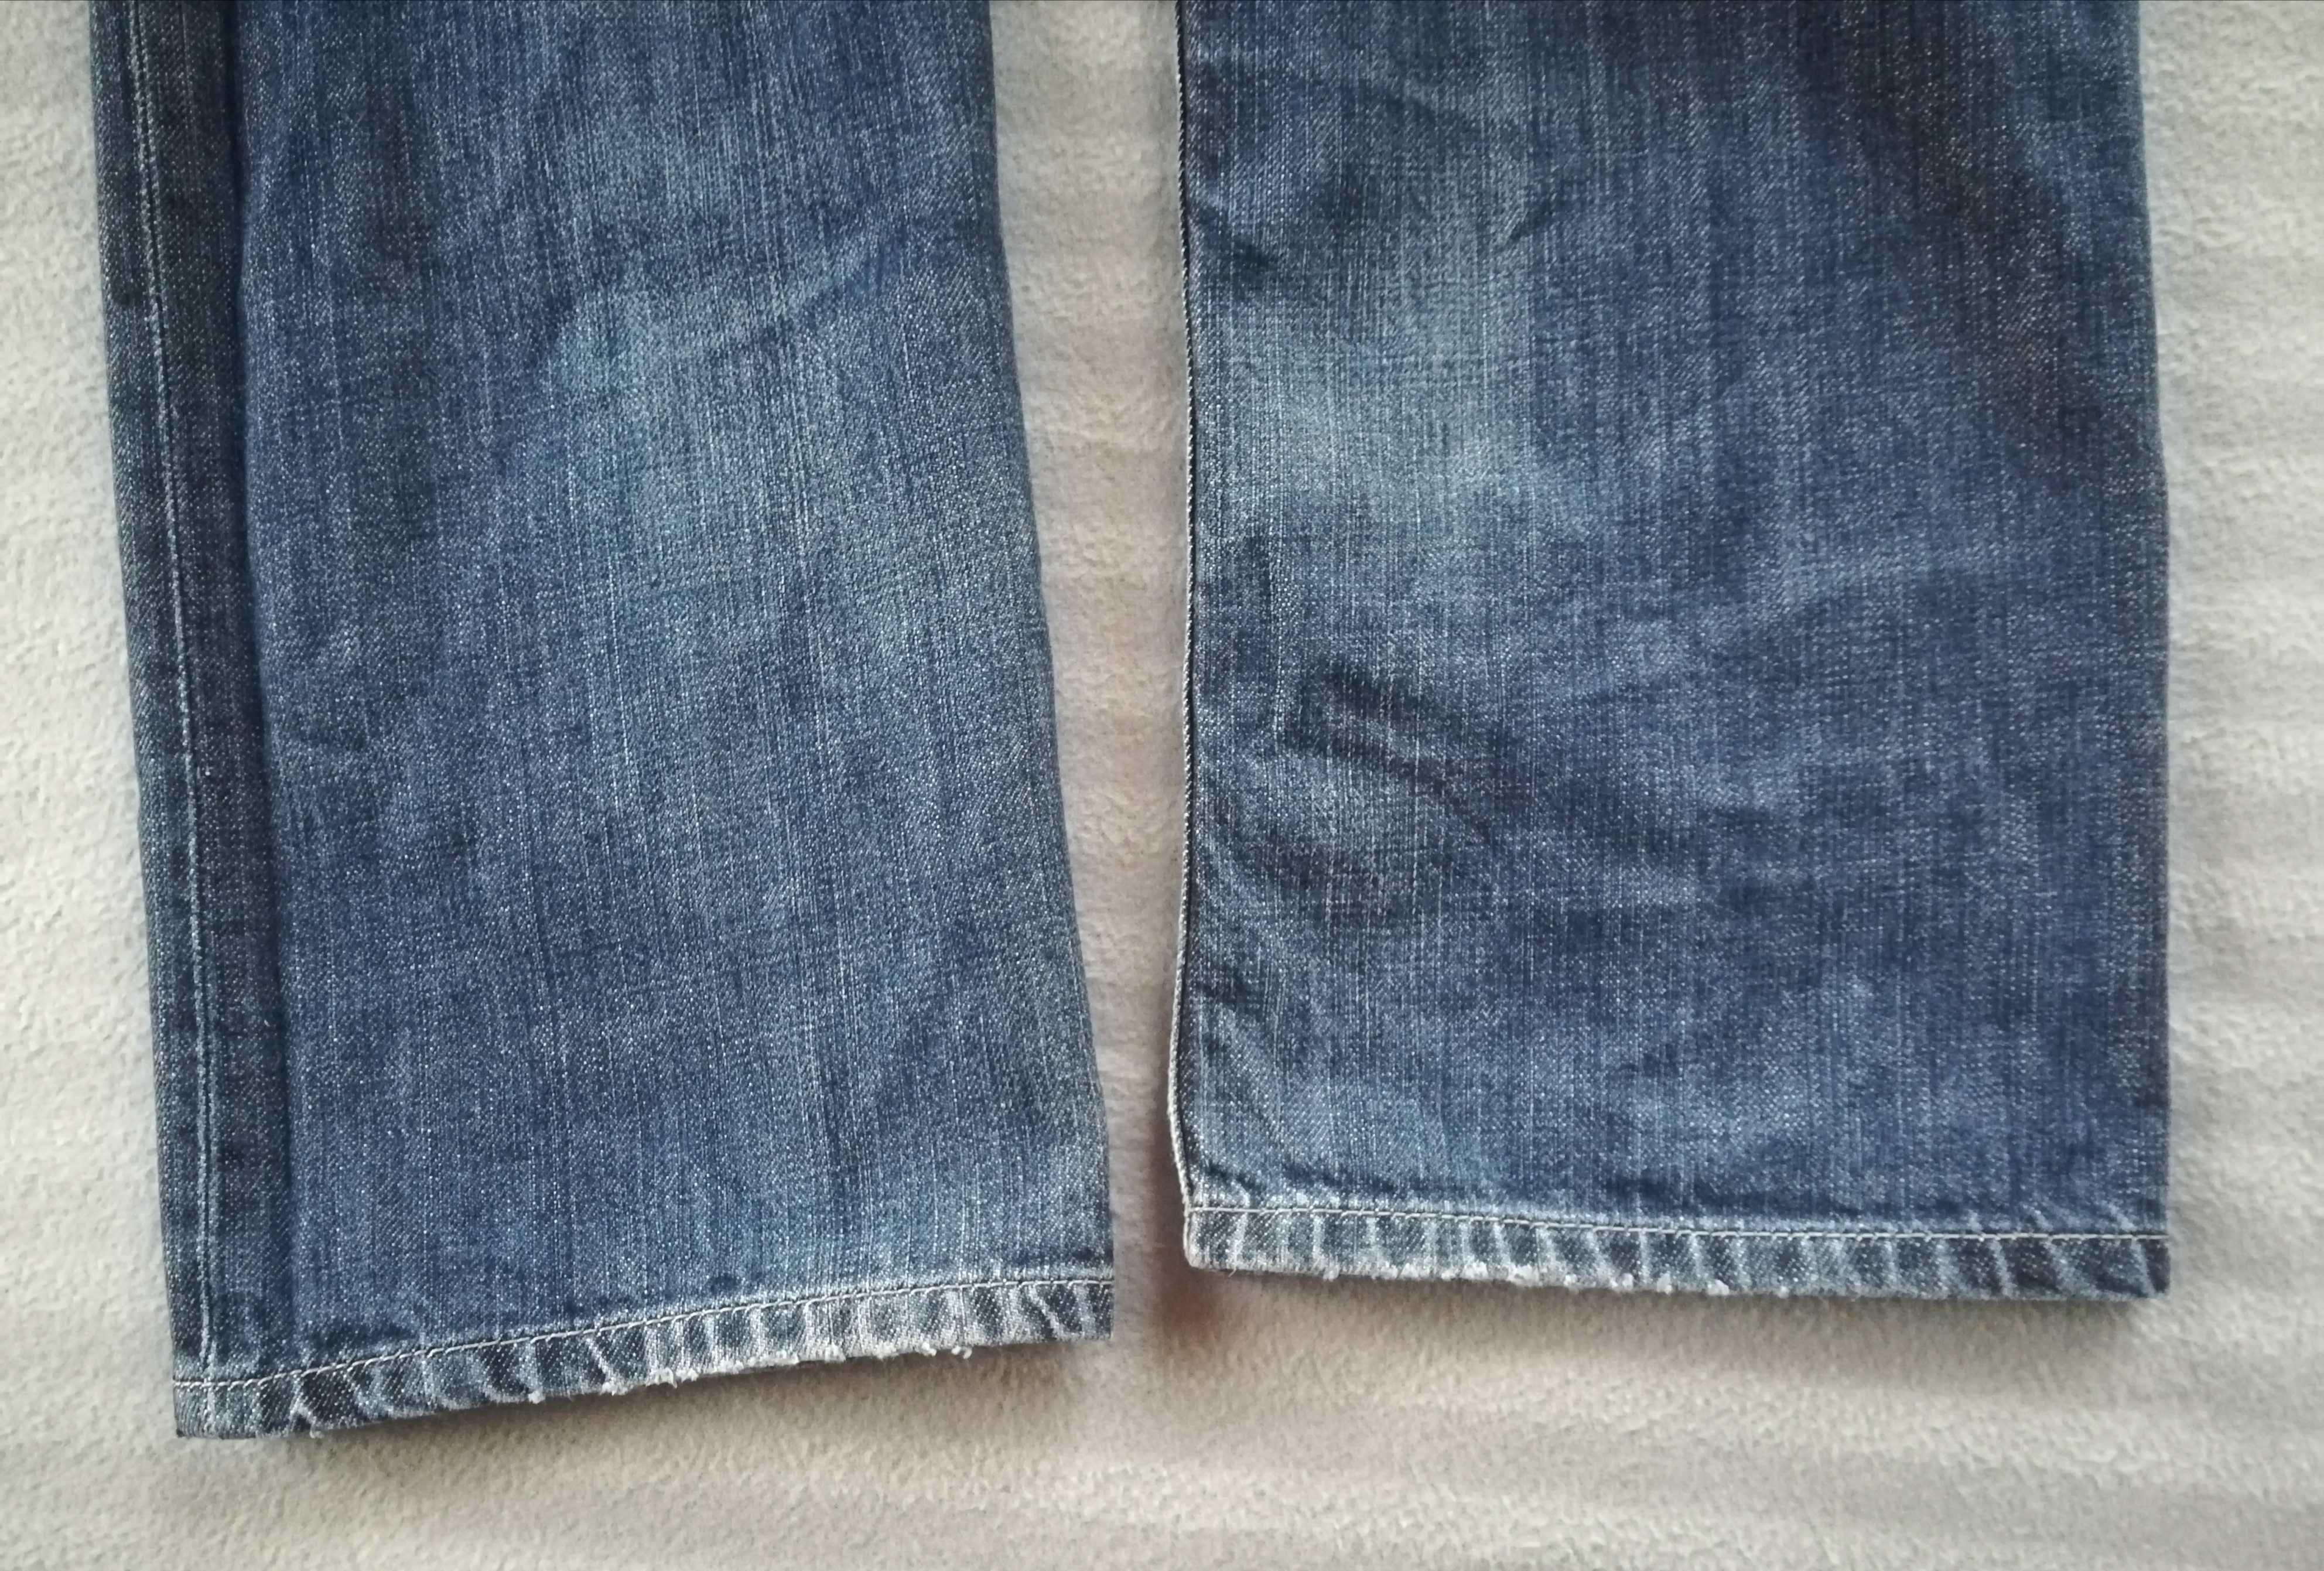 Tommy Hilfiger jeans dżinsy spodnie jeansy Madison denim 31 32